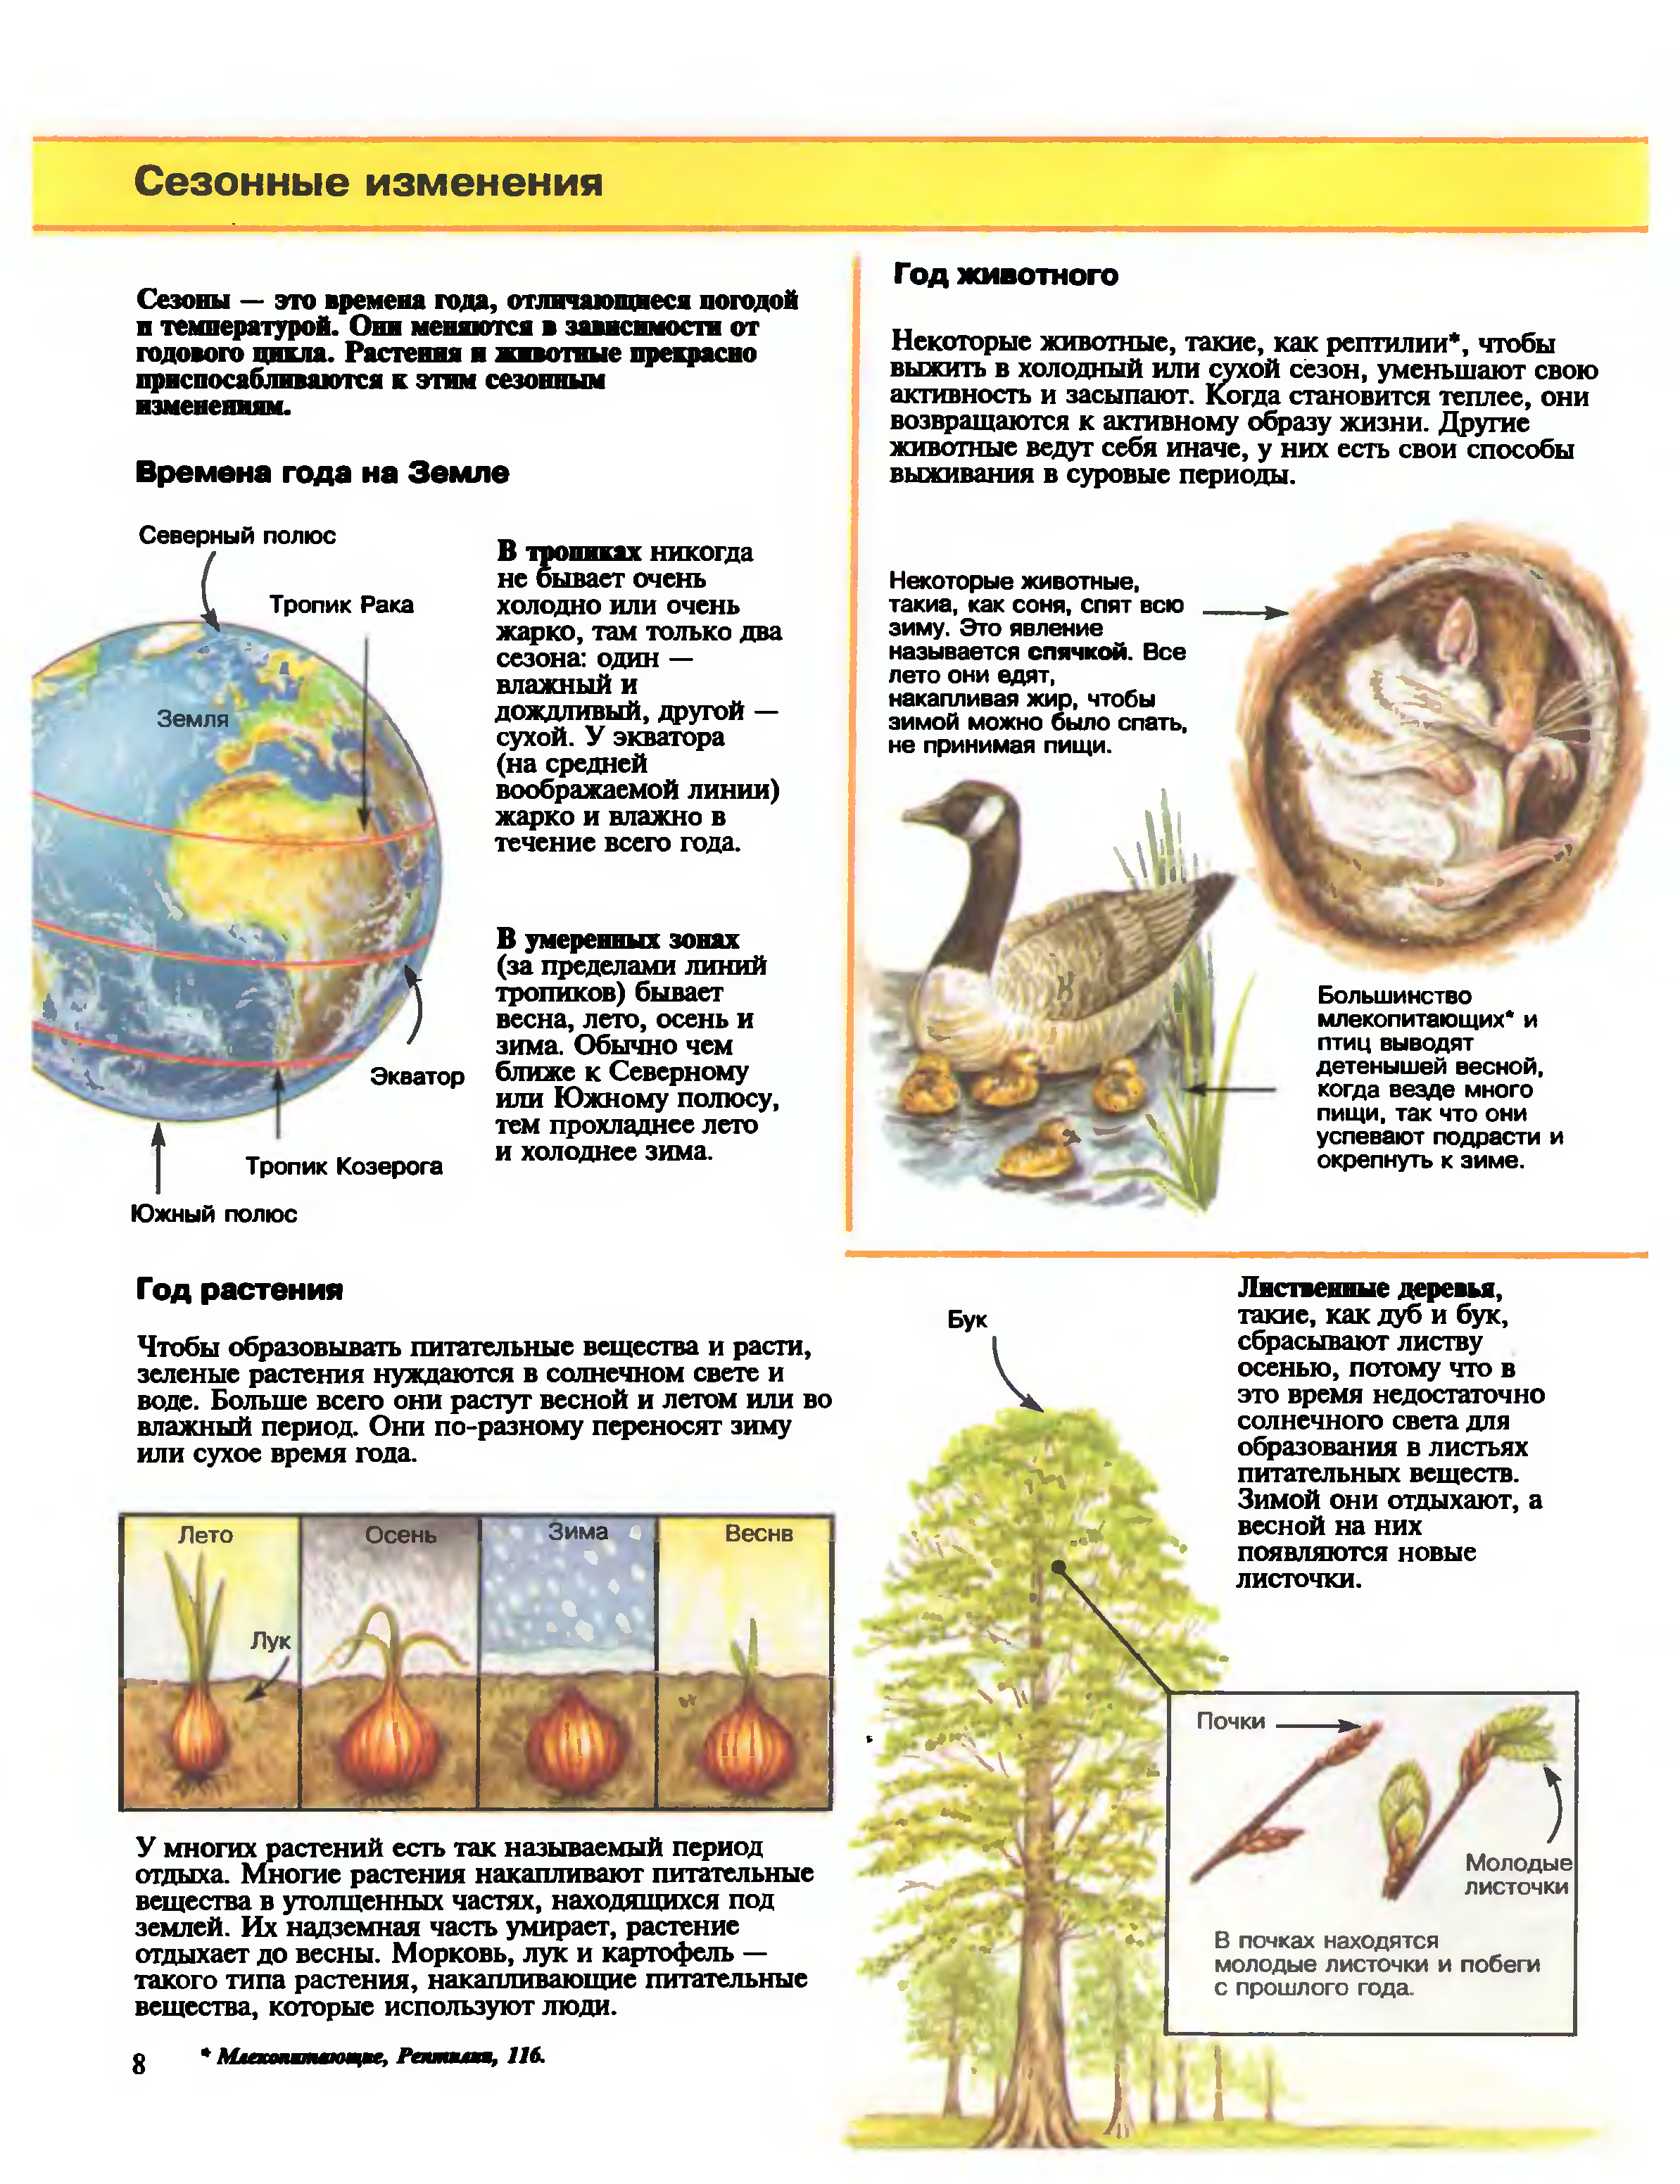 Доклад на тему сезонные изменения в организмах